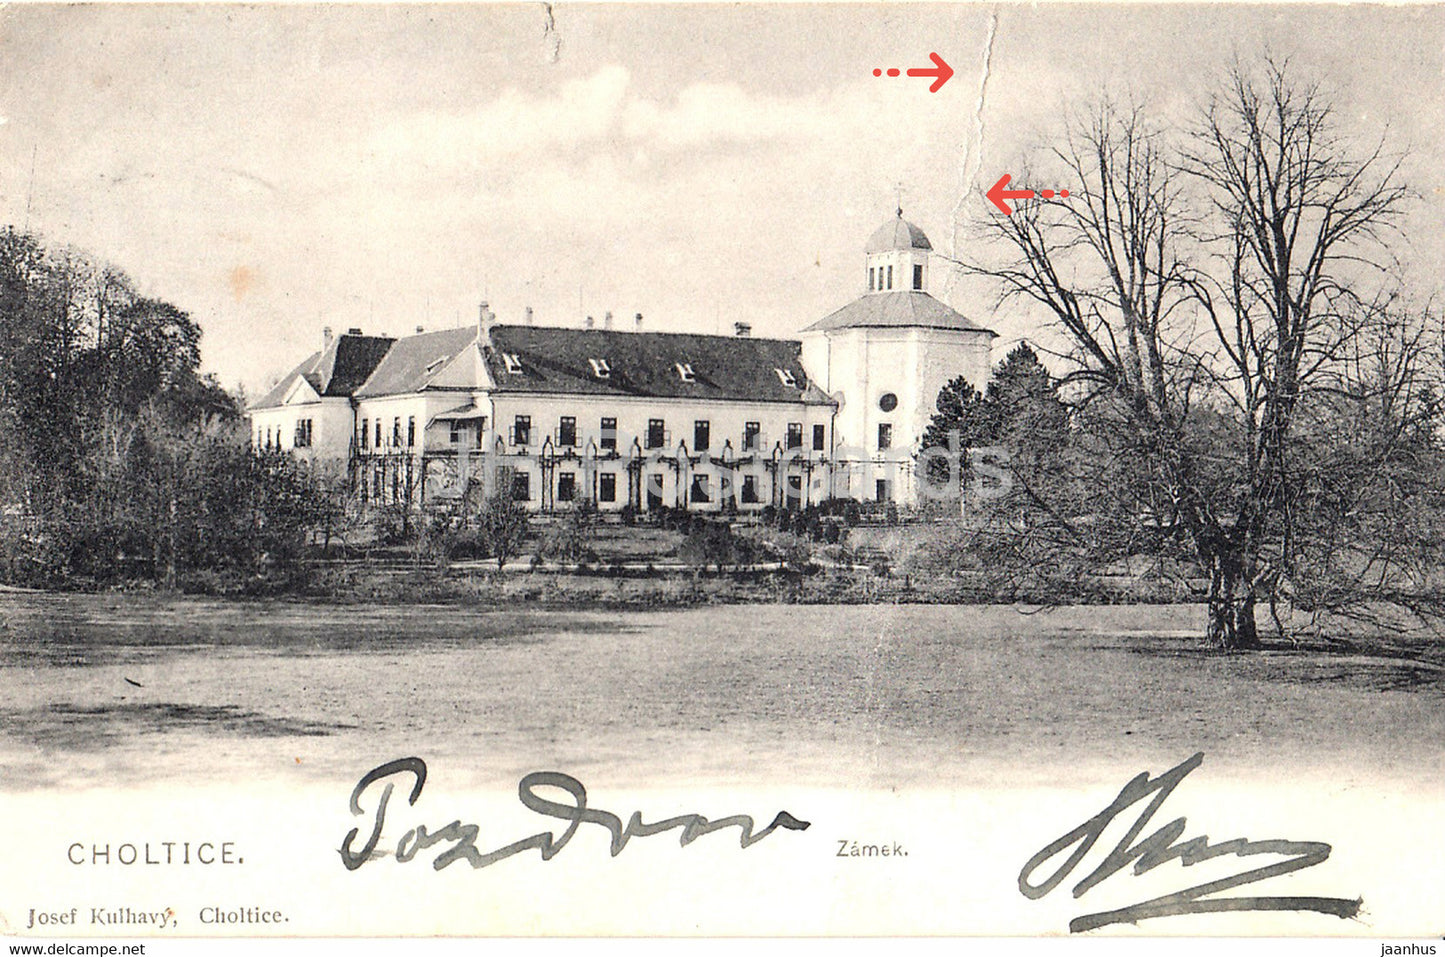 Choltice - Zamek - castle - old postcard - 1912 - Czech Republic - used - JH Postcards